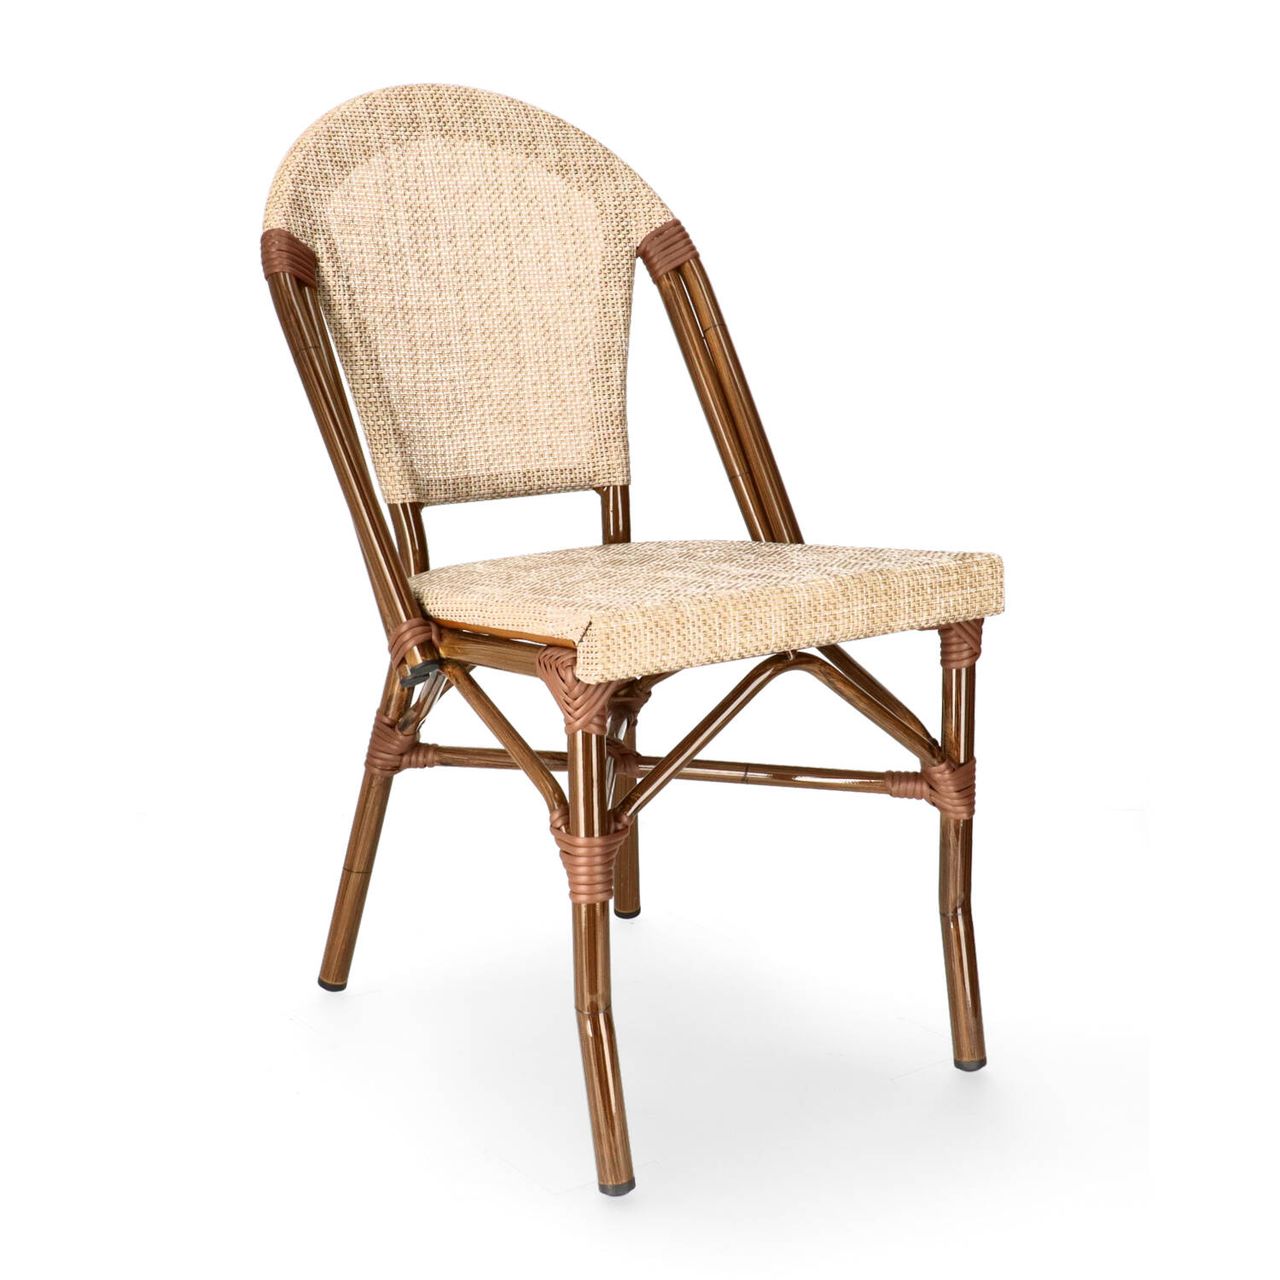 DL PARIS C Natúr design, klasszikus Tessil betétes kültéri szék